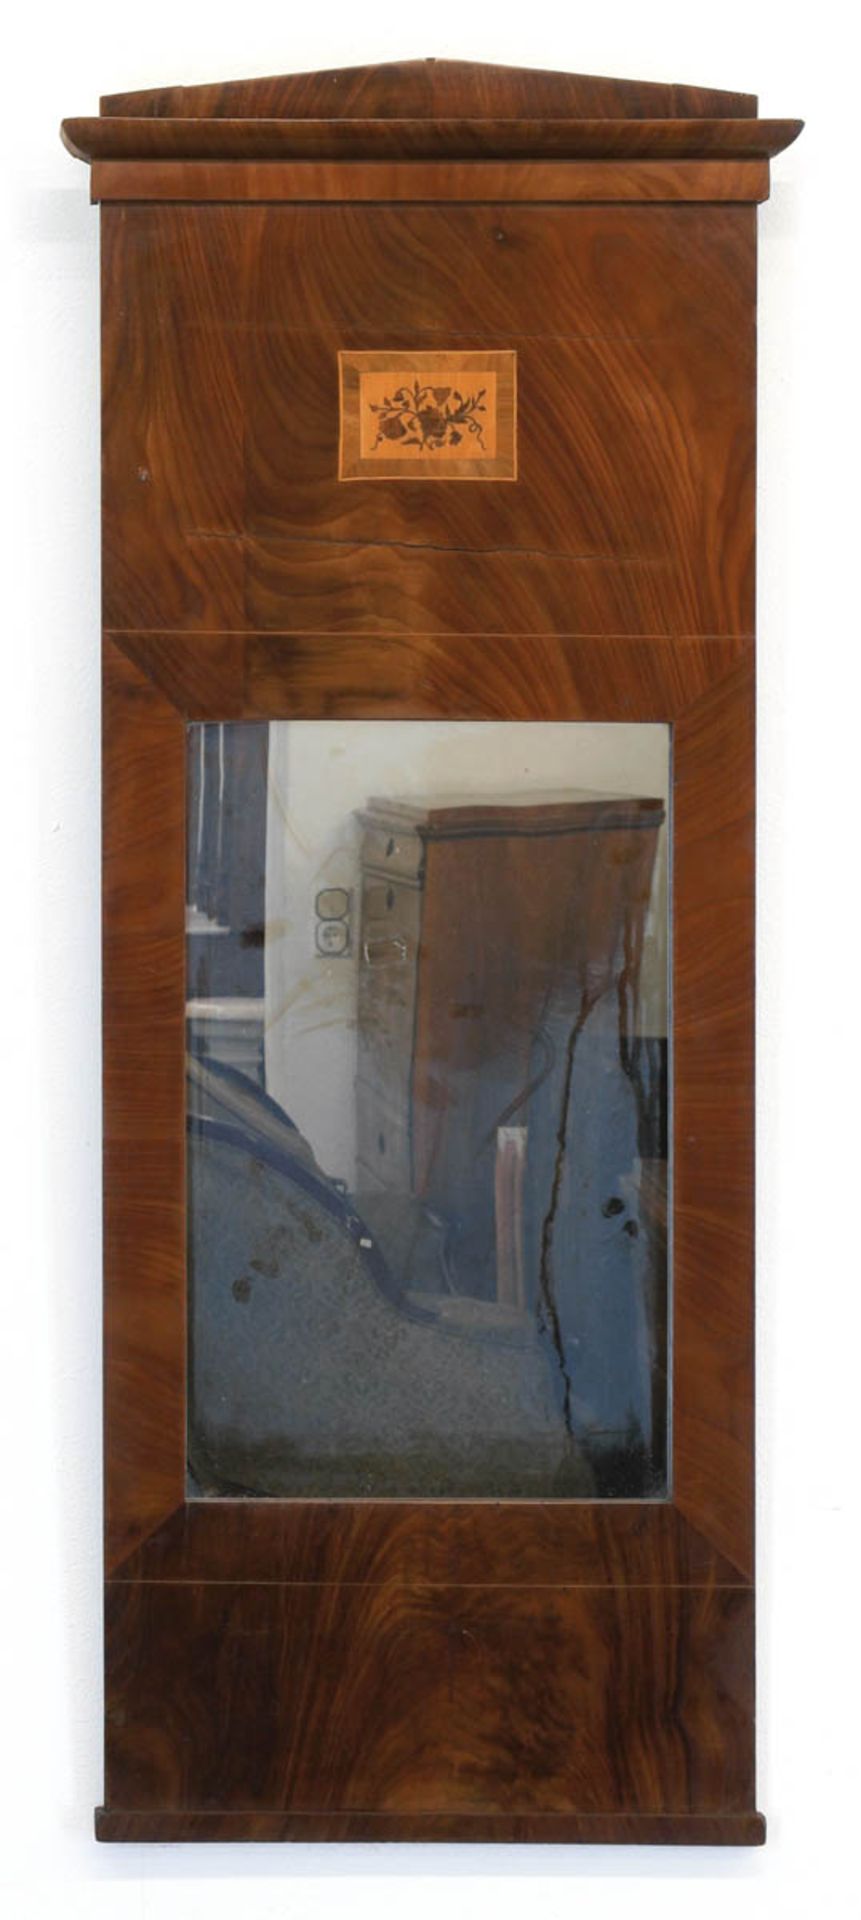 Biedermeier-Spiegel, Mahagoni furniert, intarsiertes Giebelfeld mit Dreiecksabschluß,107x44 cm